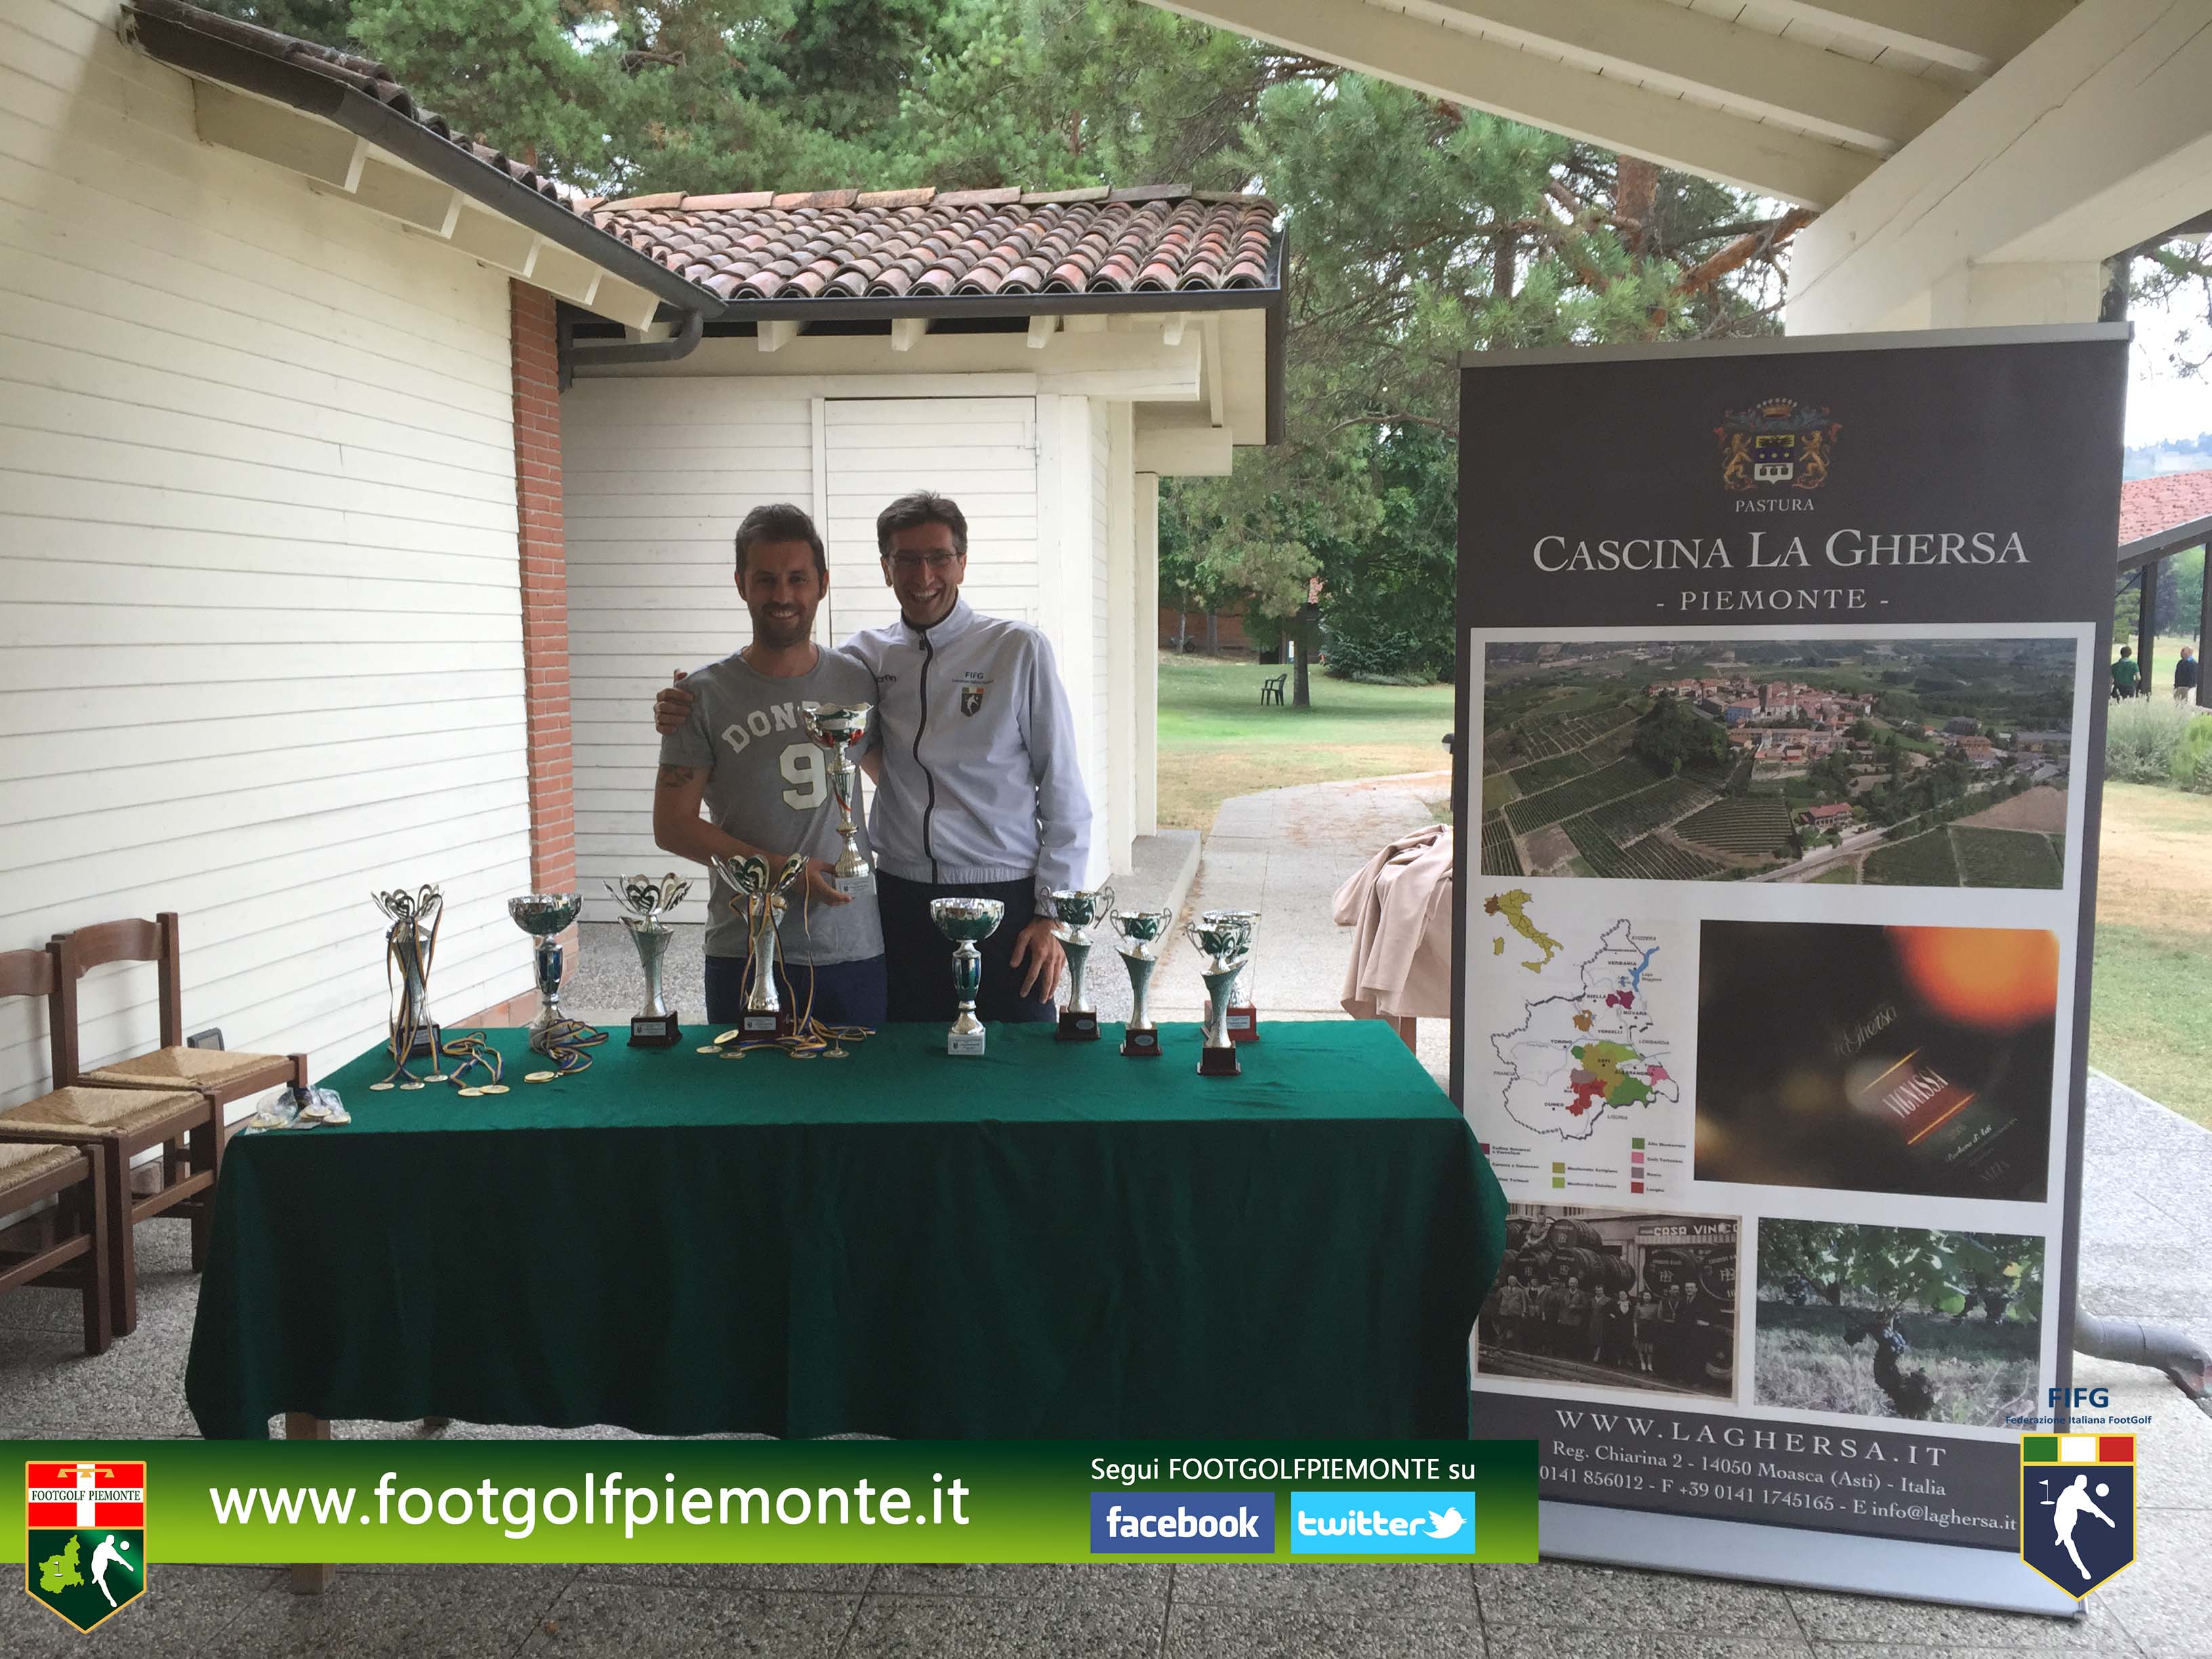 Marco Panero vince 11 Regions’ Cup Footgolf Piemonte 2015 Golf Acqui Terme 1 agosto 2015